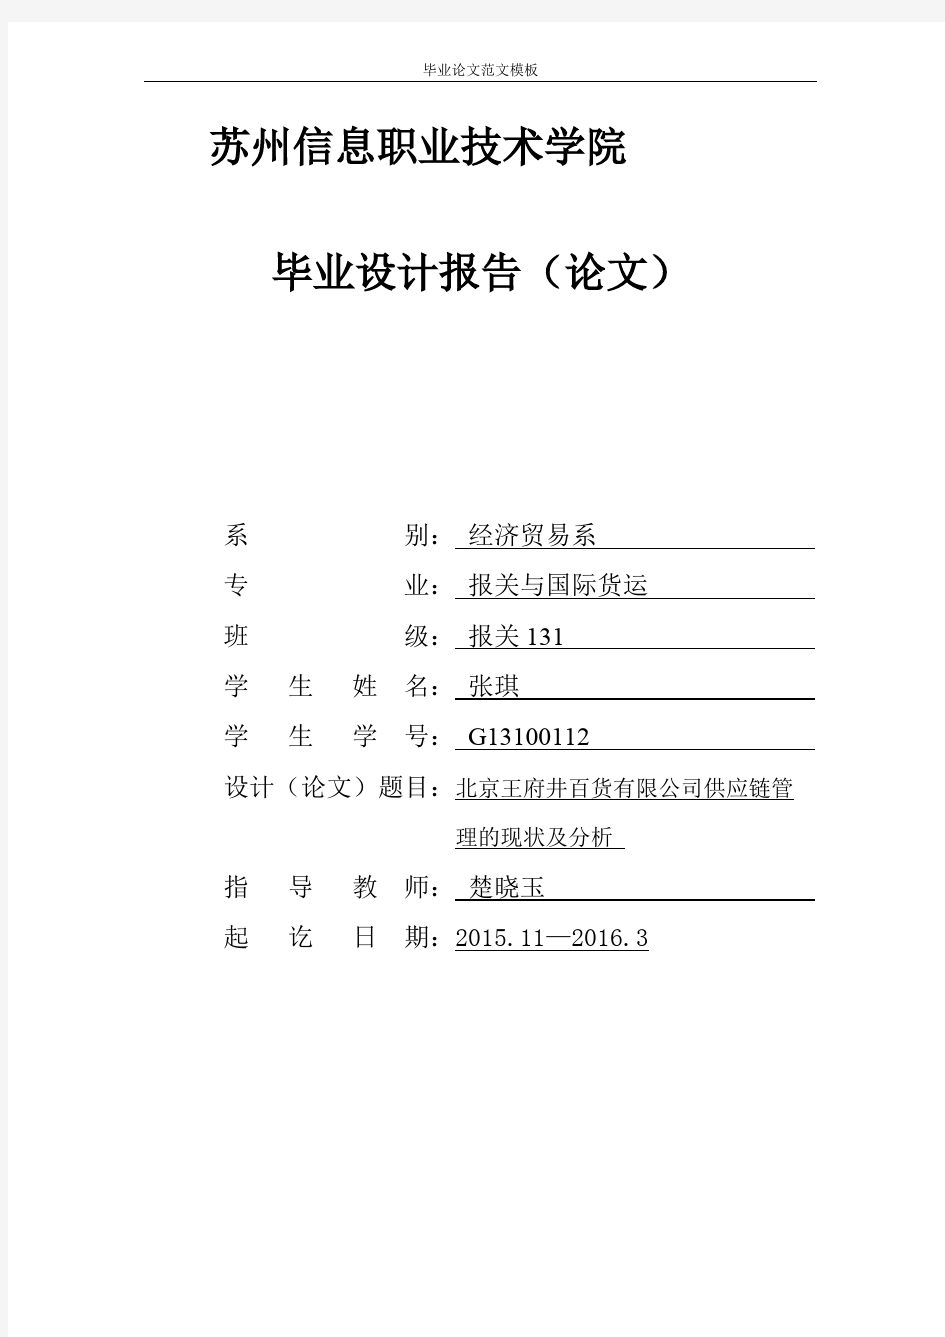 北京王府井百货有限公司供应链管理的现状及分析.pdf